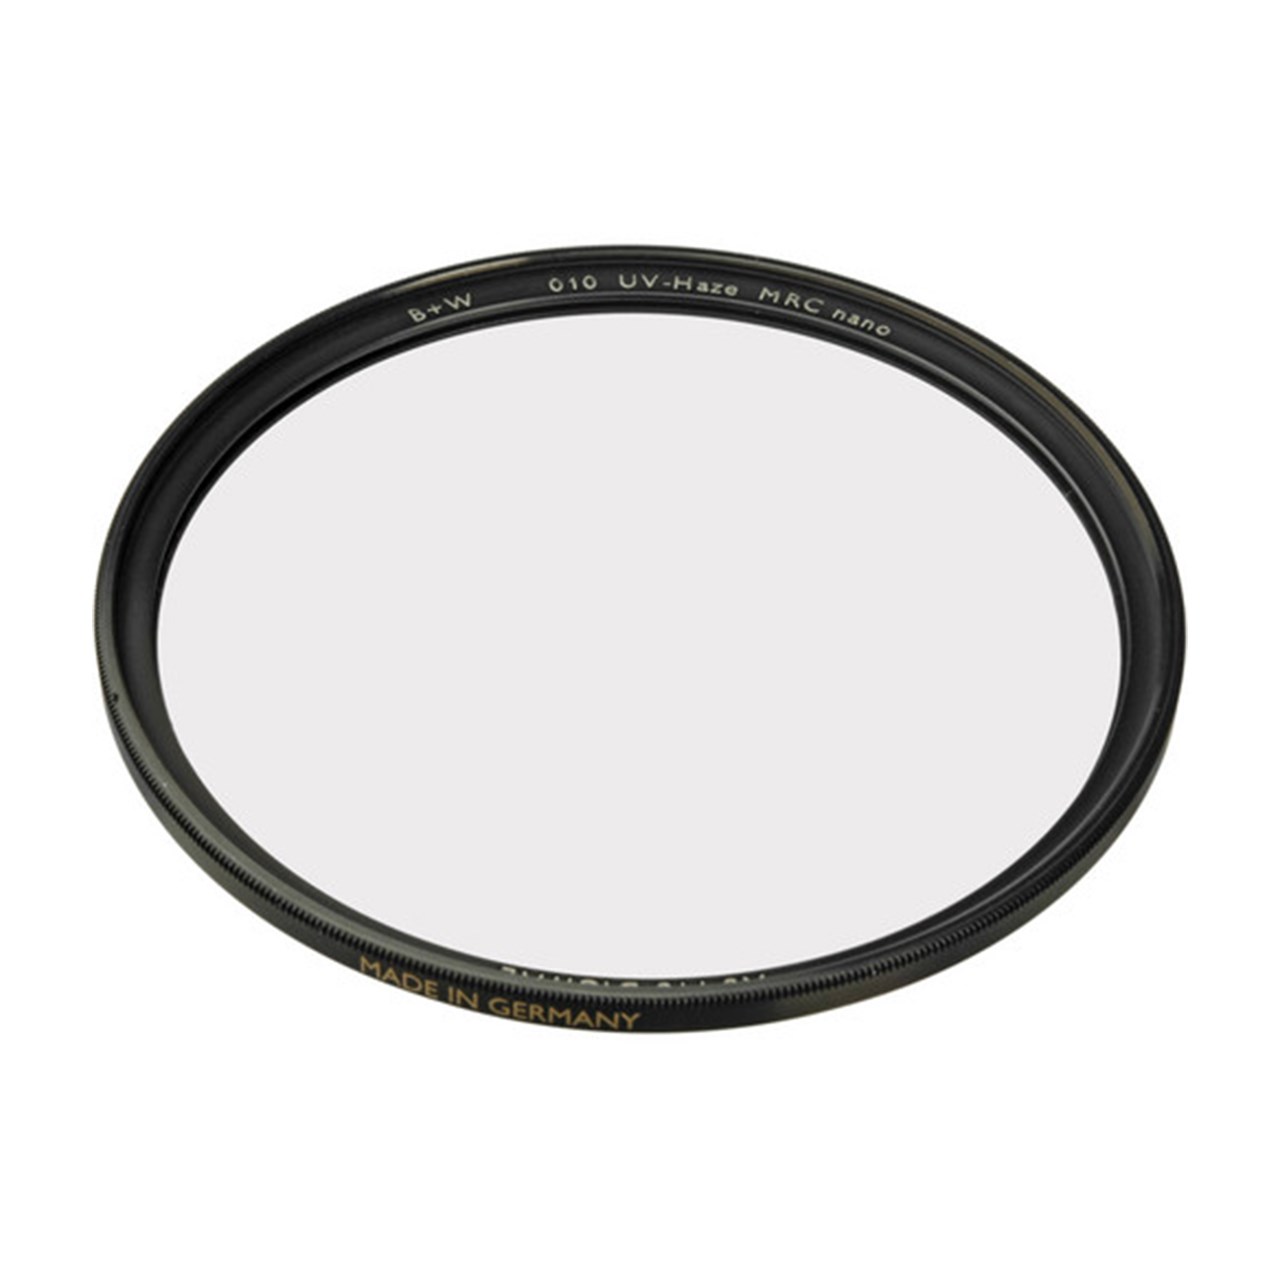 فیلتر لنز بی پلاس دبلیو مدل XS-Pro UV Haze MRC-Nano SC 010  72mm